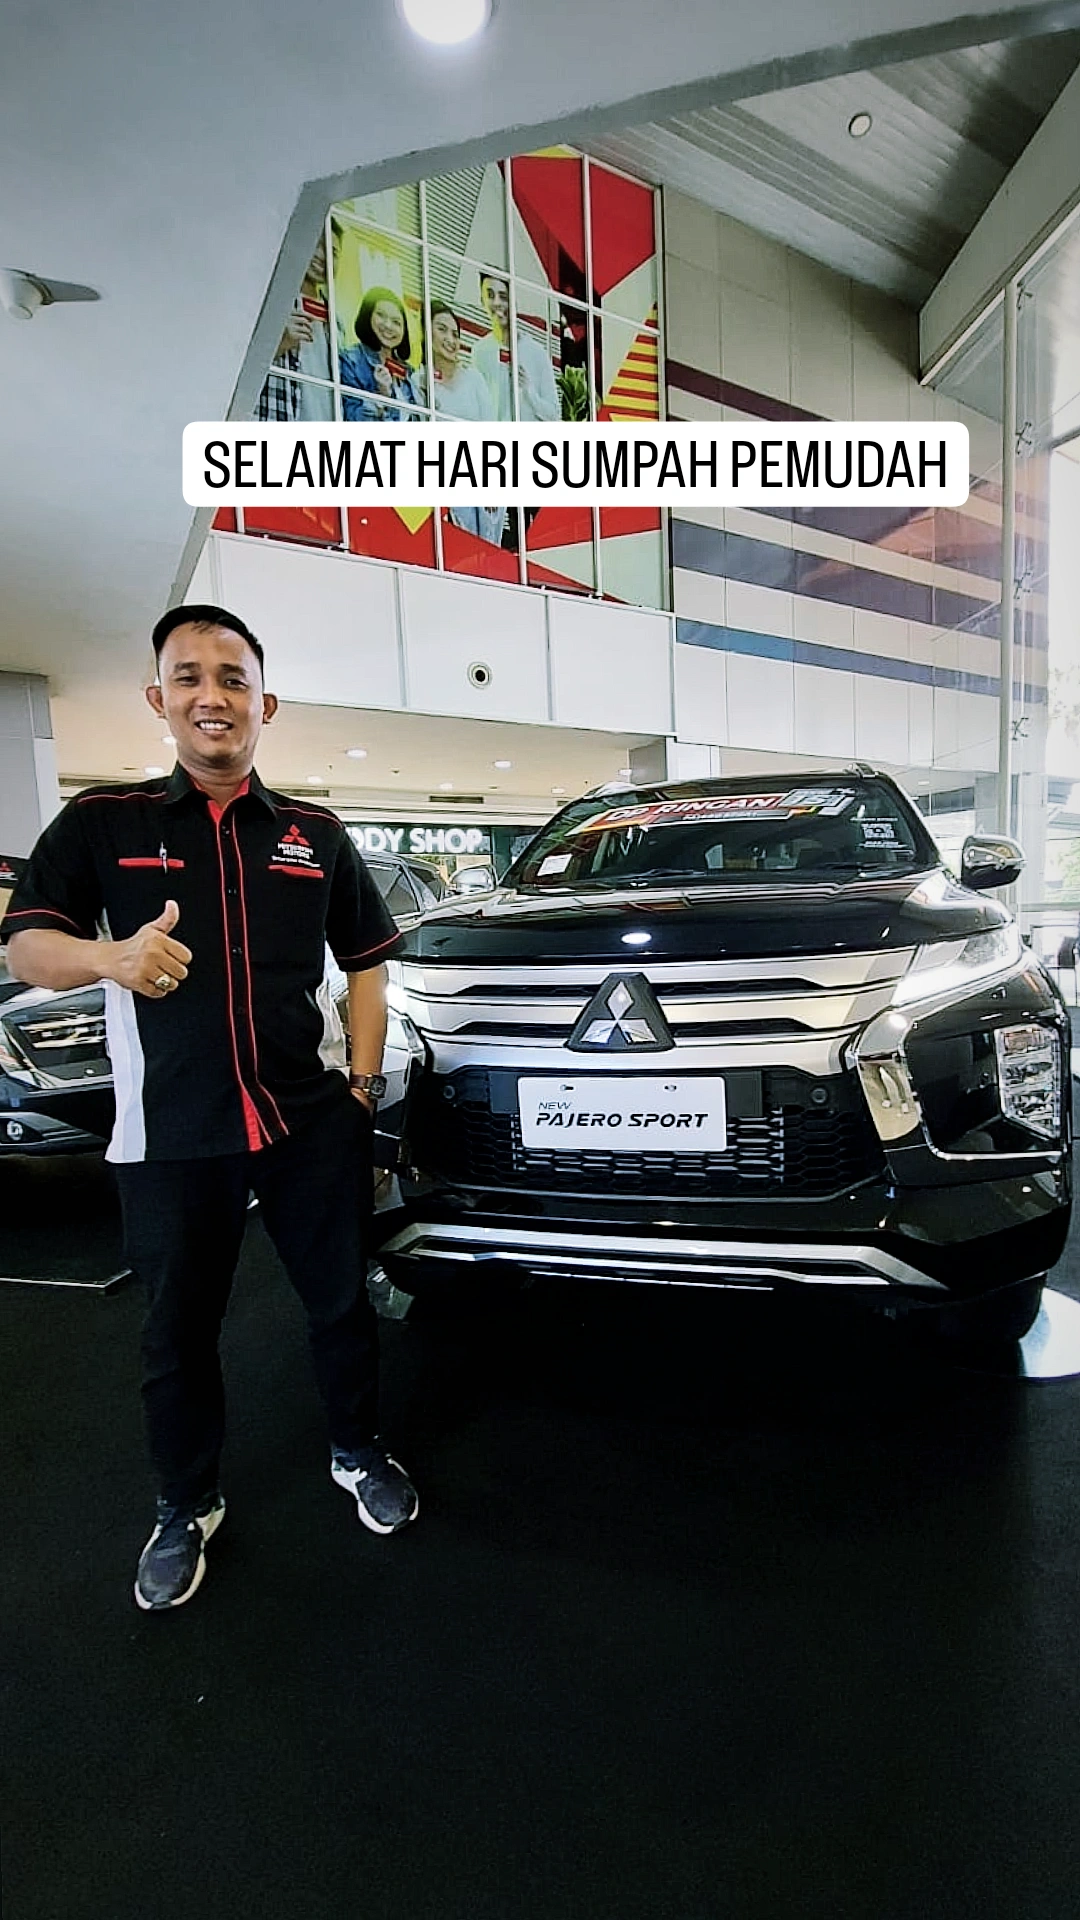 Jangan Lewatkan! Penawaran Eksklusif di Dealer Mitsubishi Bandar Lampung